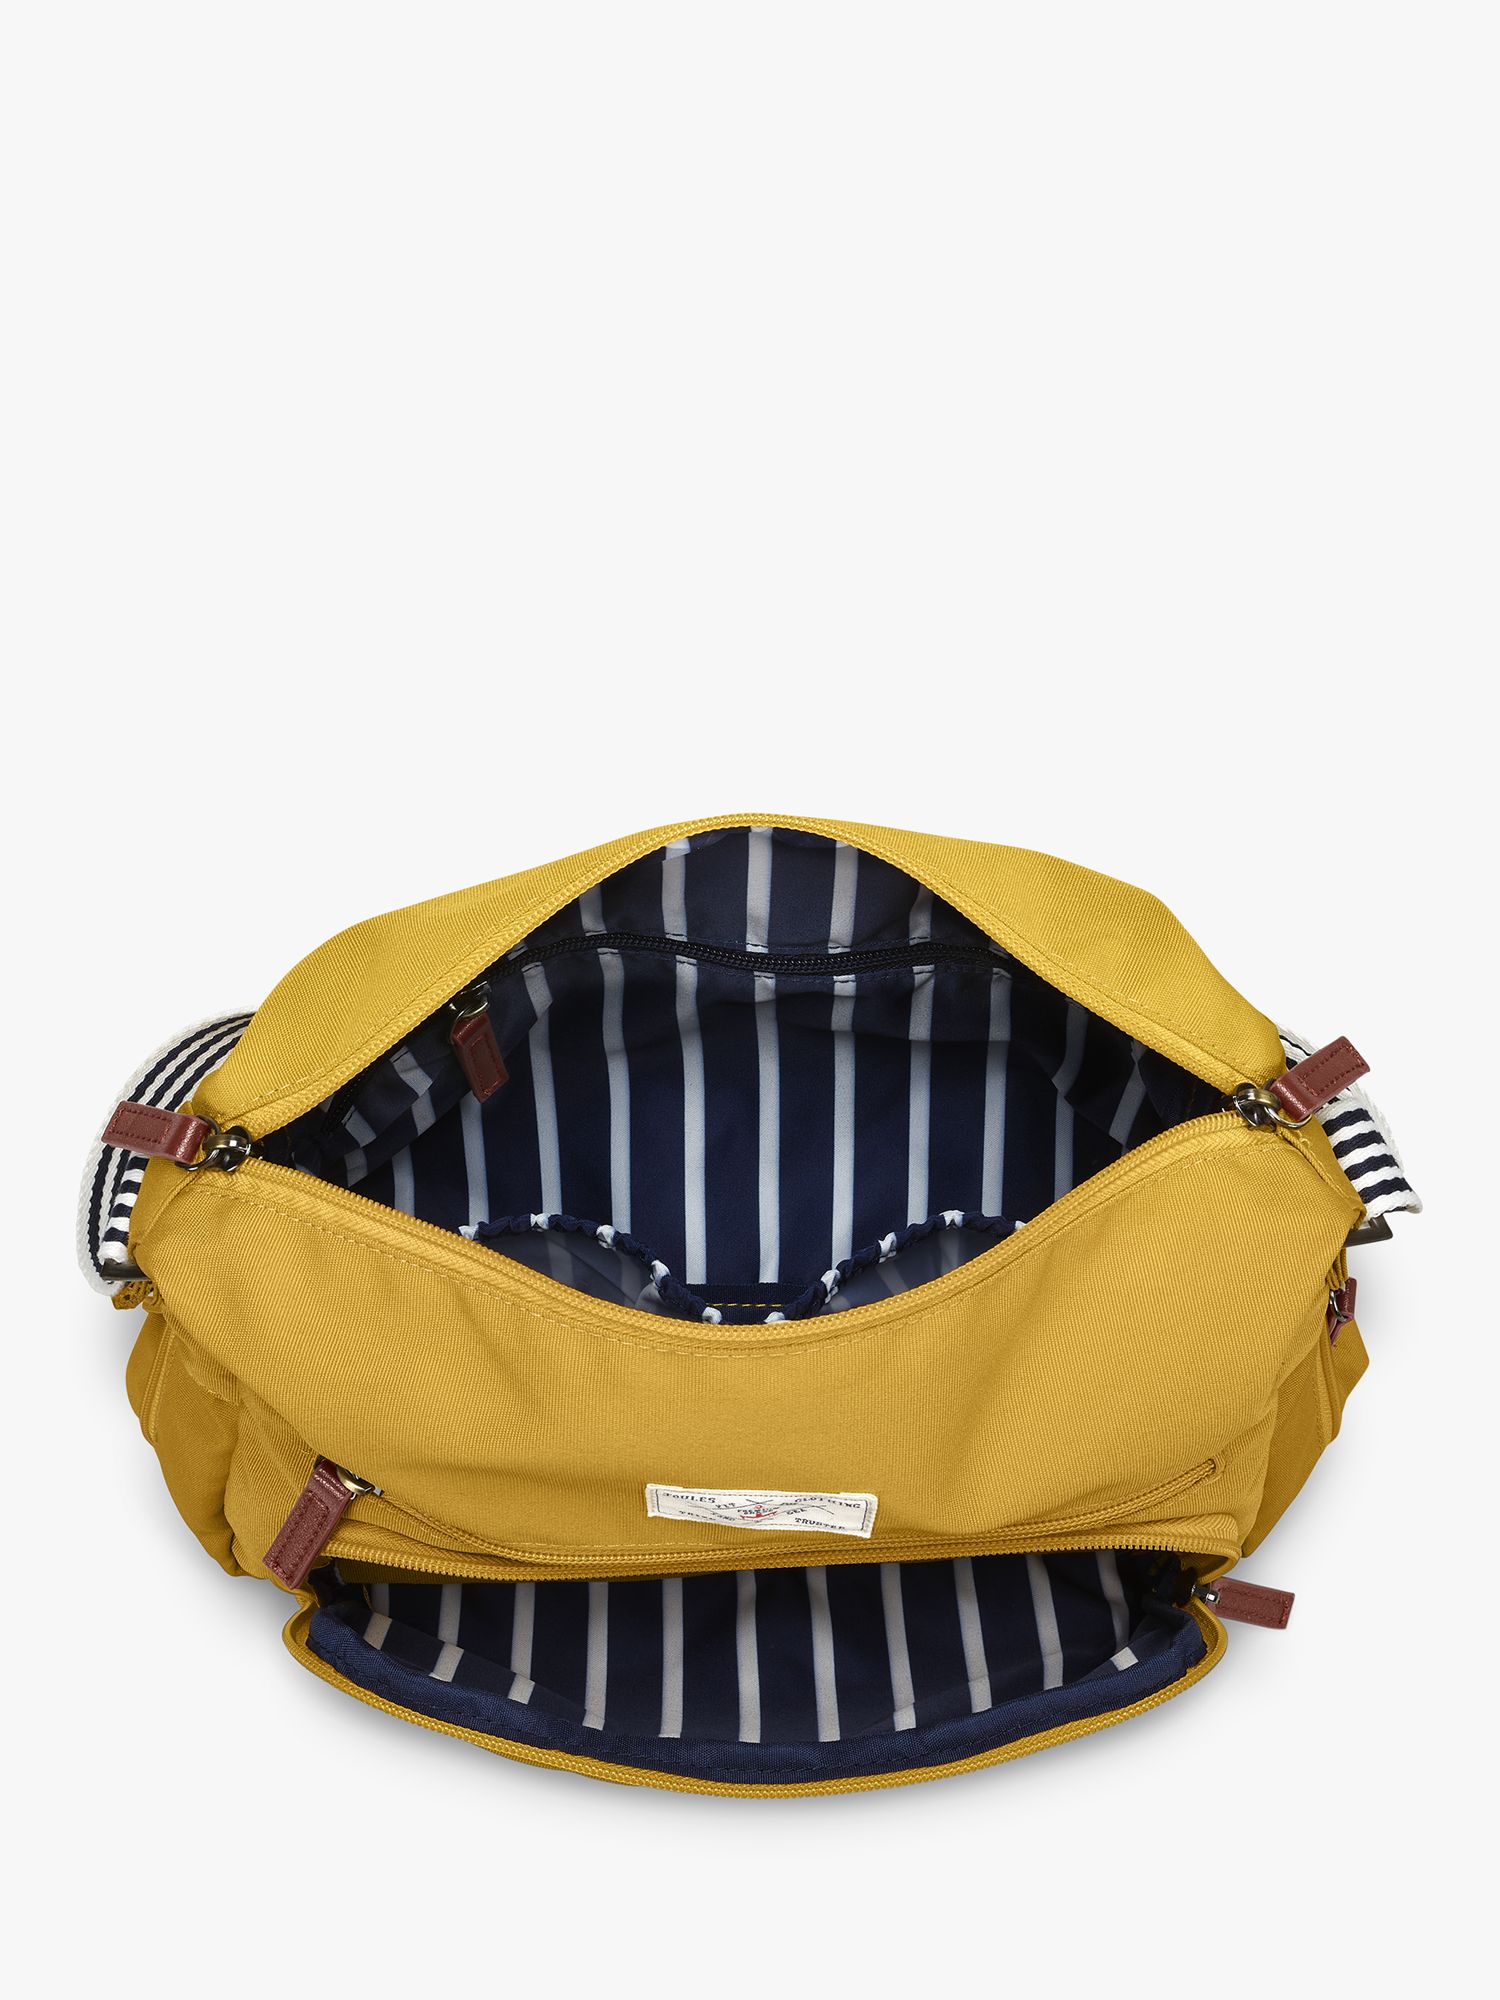 Buy Joules Coast Collection Shoulder Bag Online at johnlewis.com